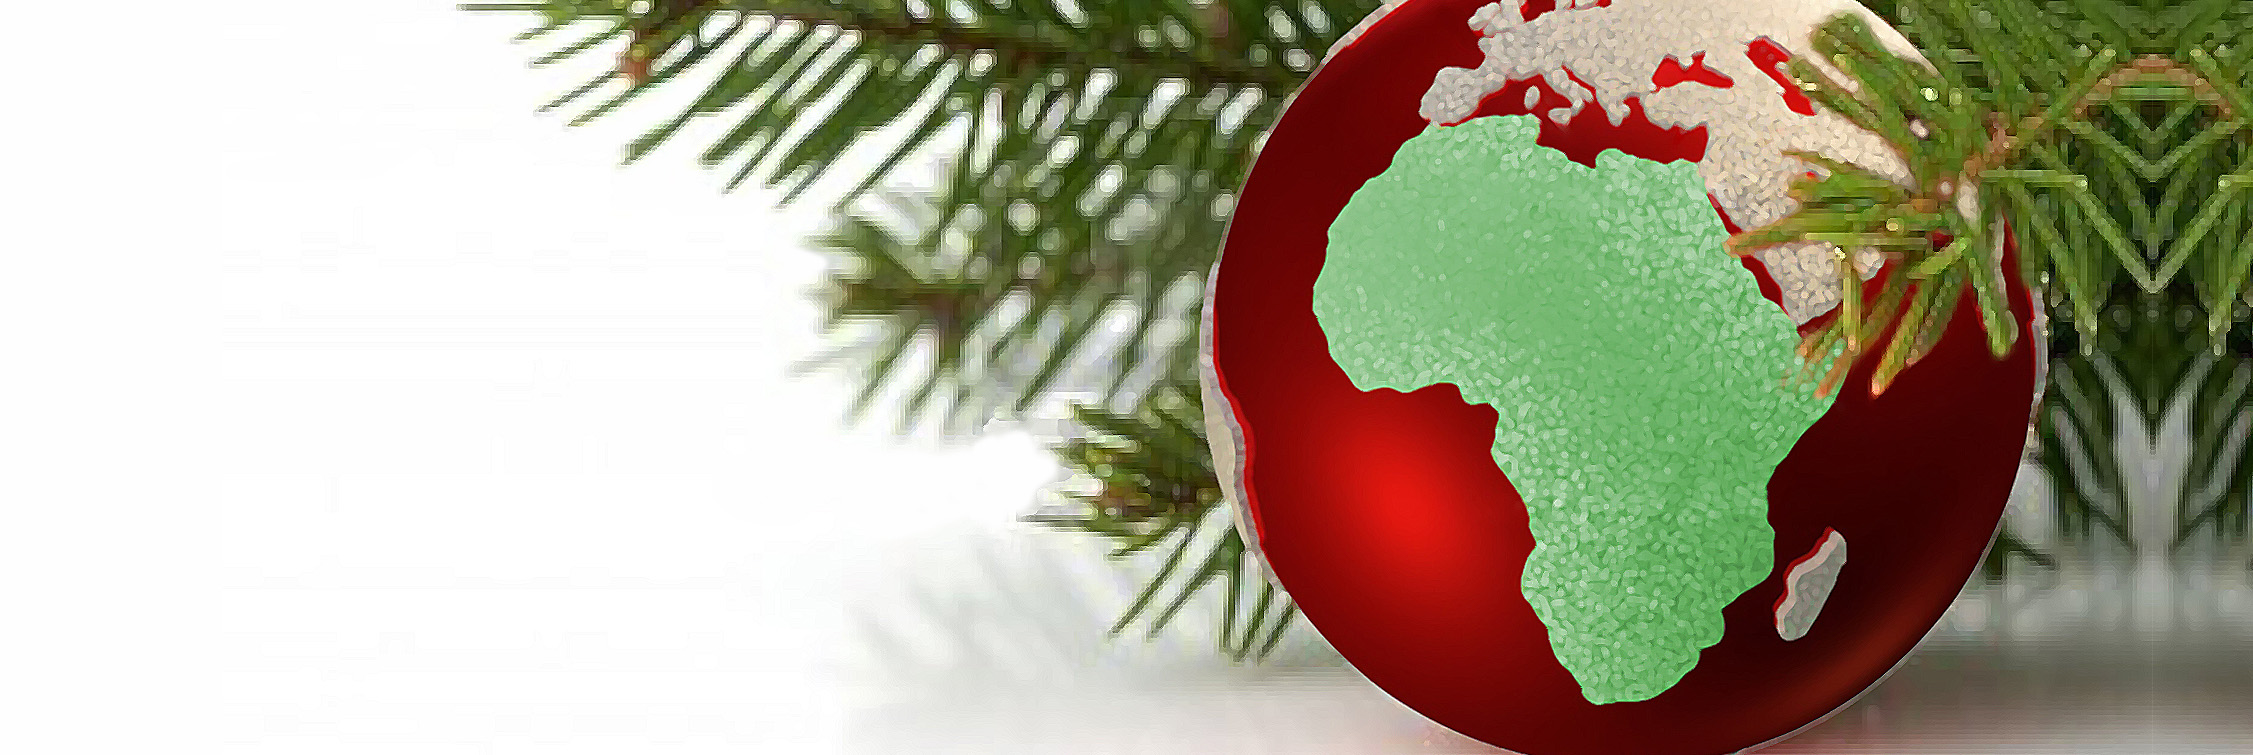 ¿Cómo se celebra la Navidad en África?